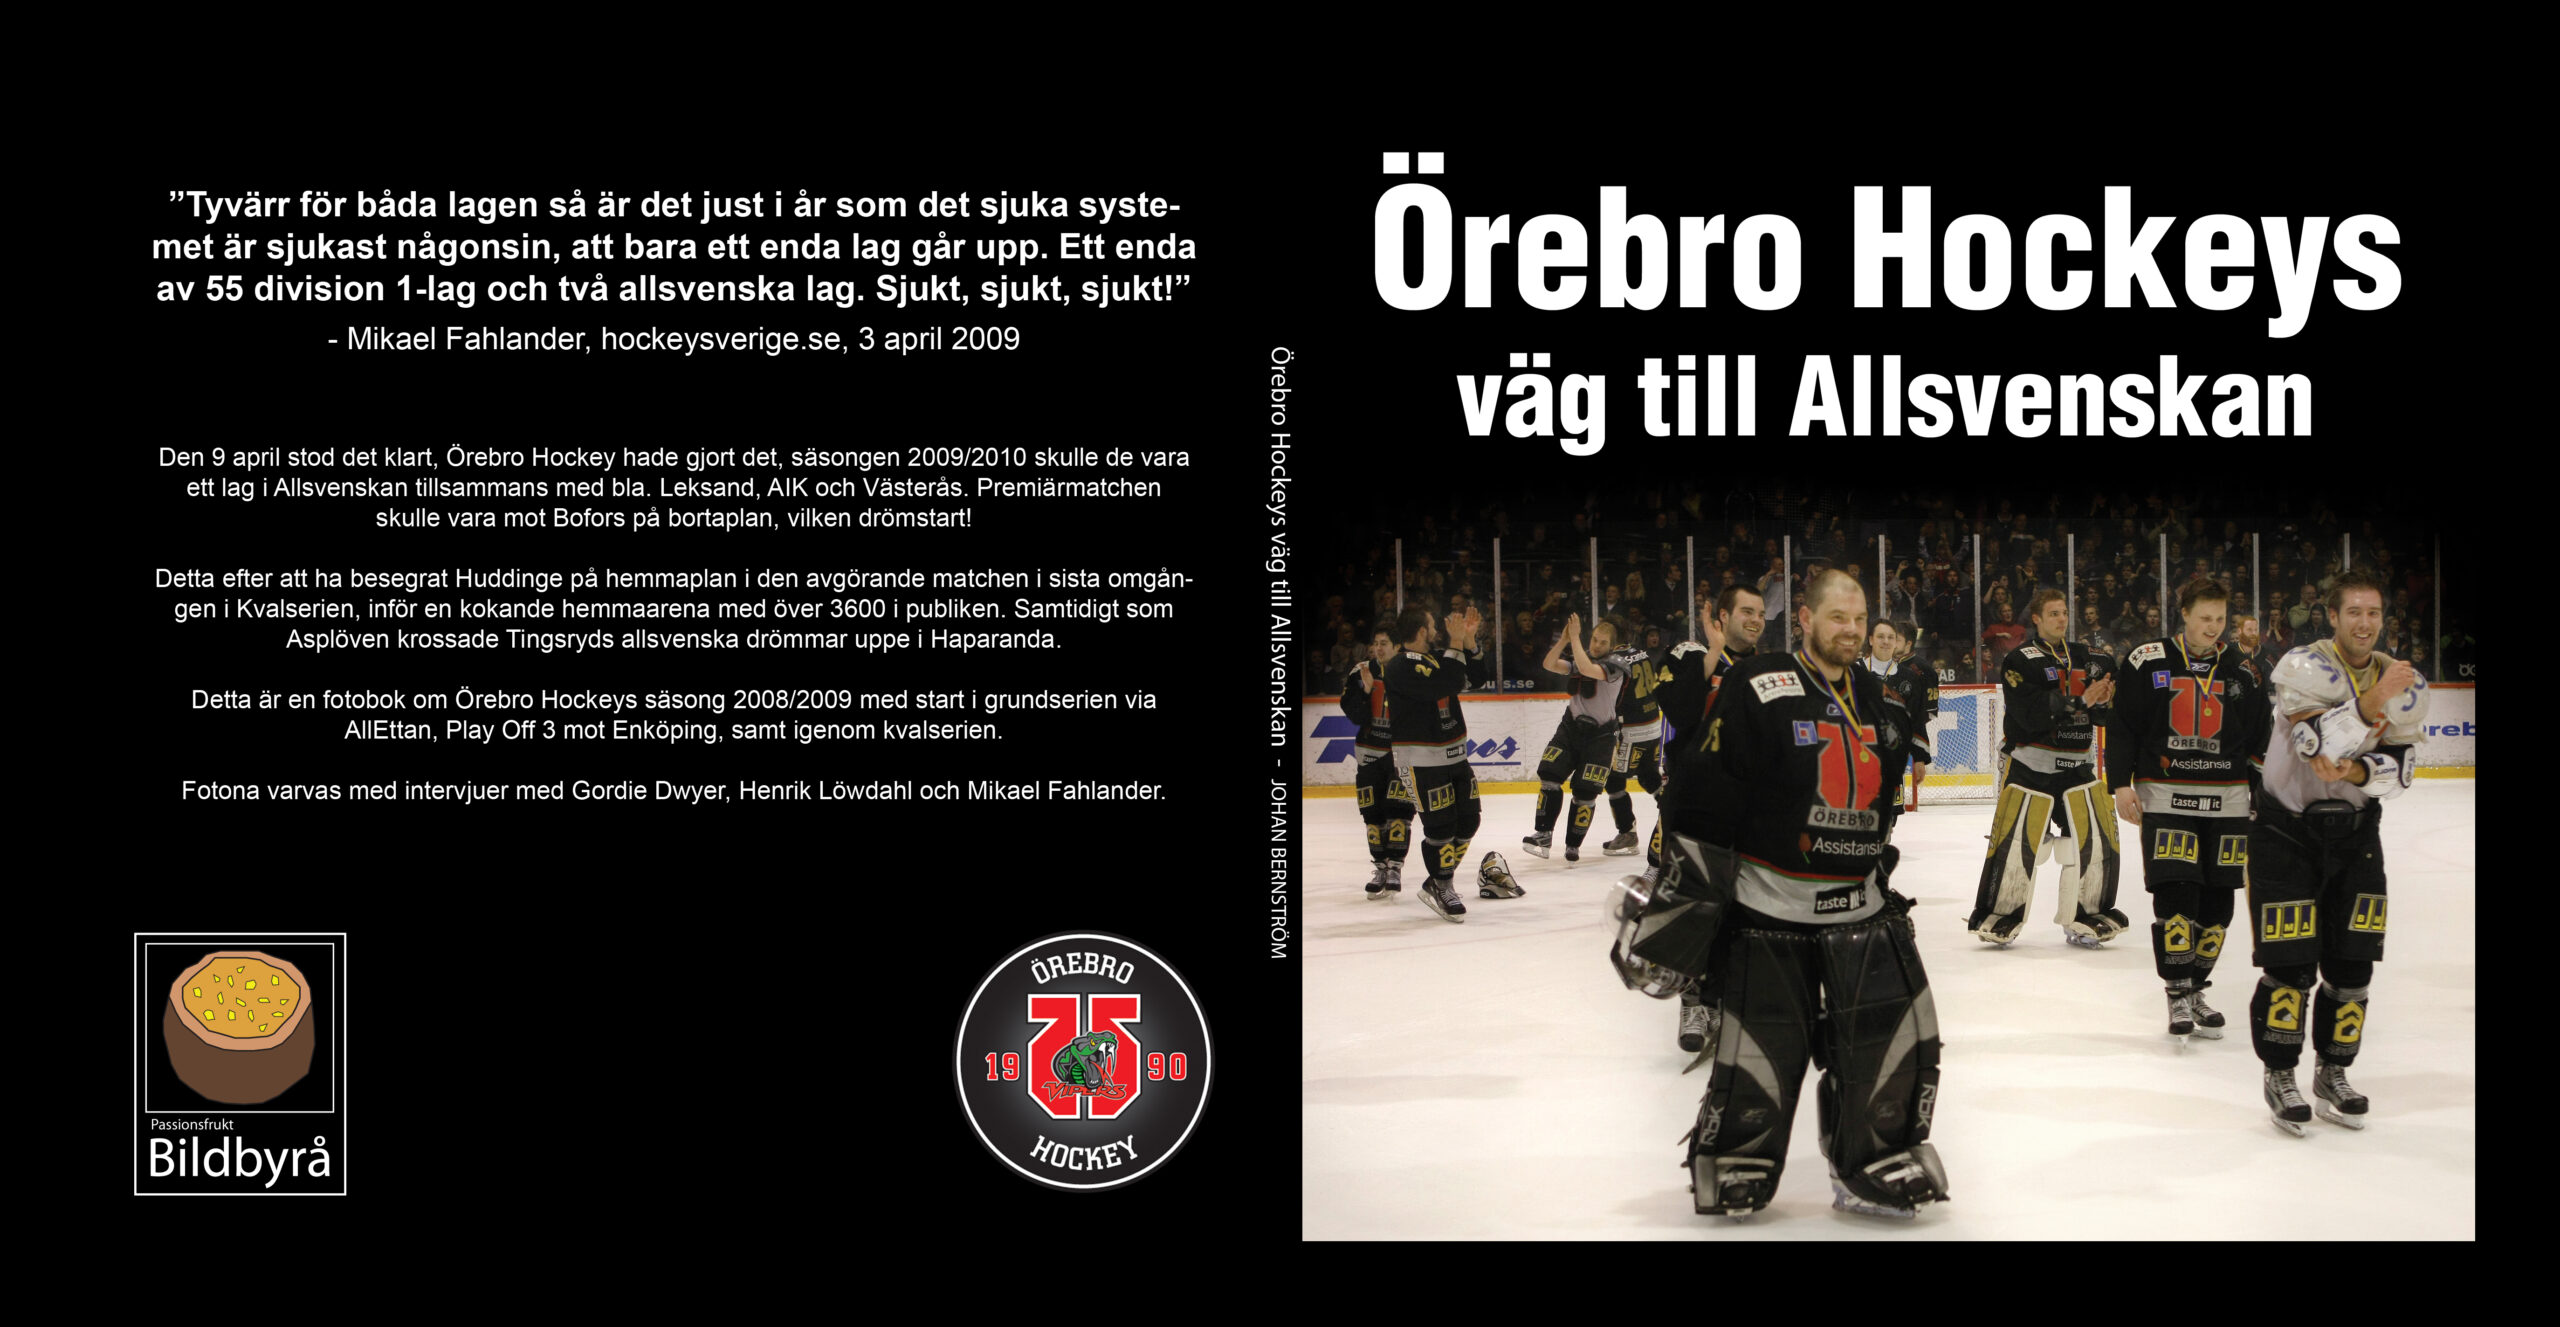 Örebro Hockeys väg till Allsvenskan